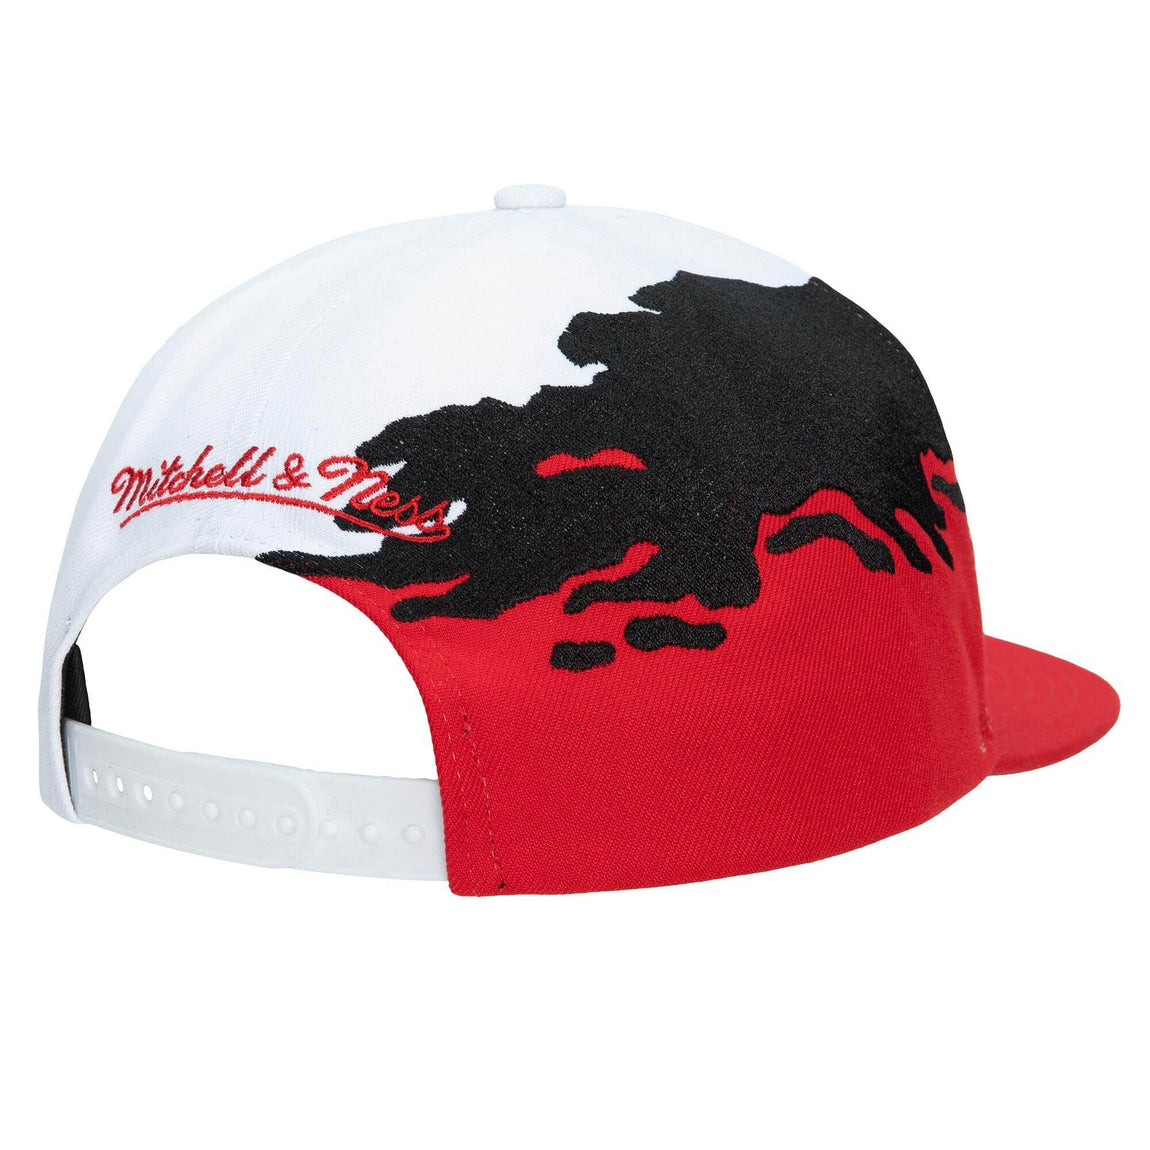 Mitchell & Ness Chicago Bulls NBA Paintbrush Snapback Hat (White/Red) - Mitchell & Ness Chicago Bulls NBA Paintbrush Snapback Hat (White/Red) - 